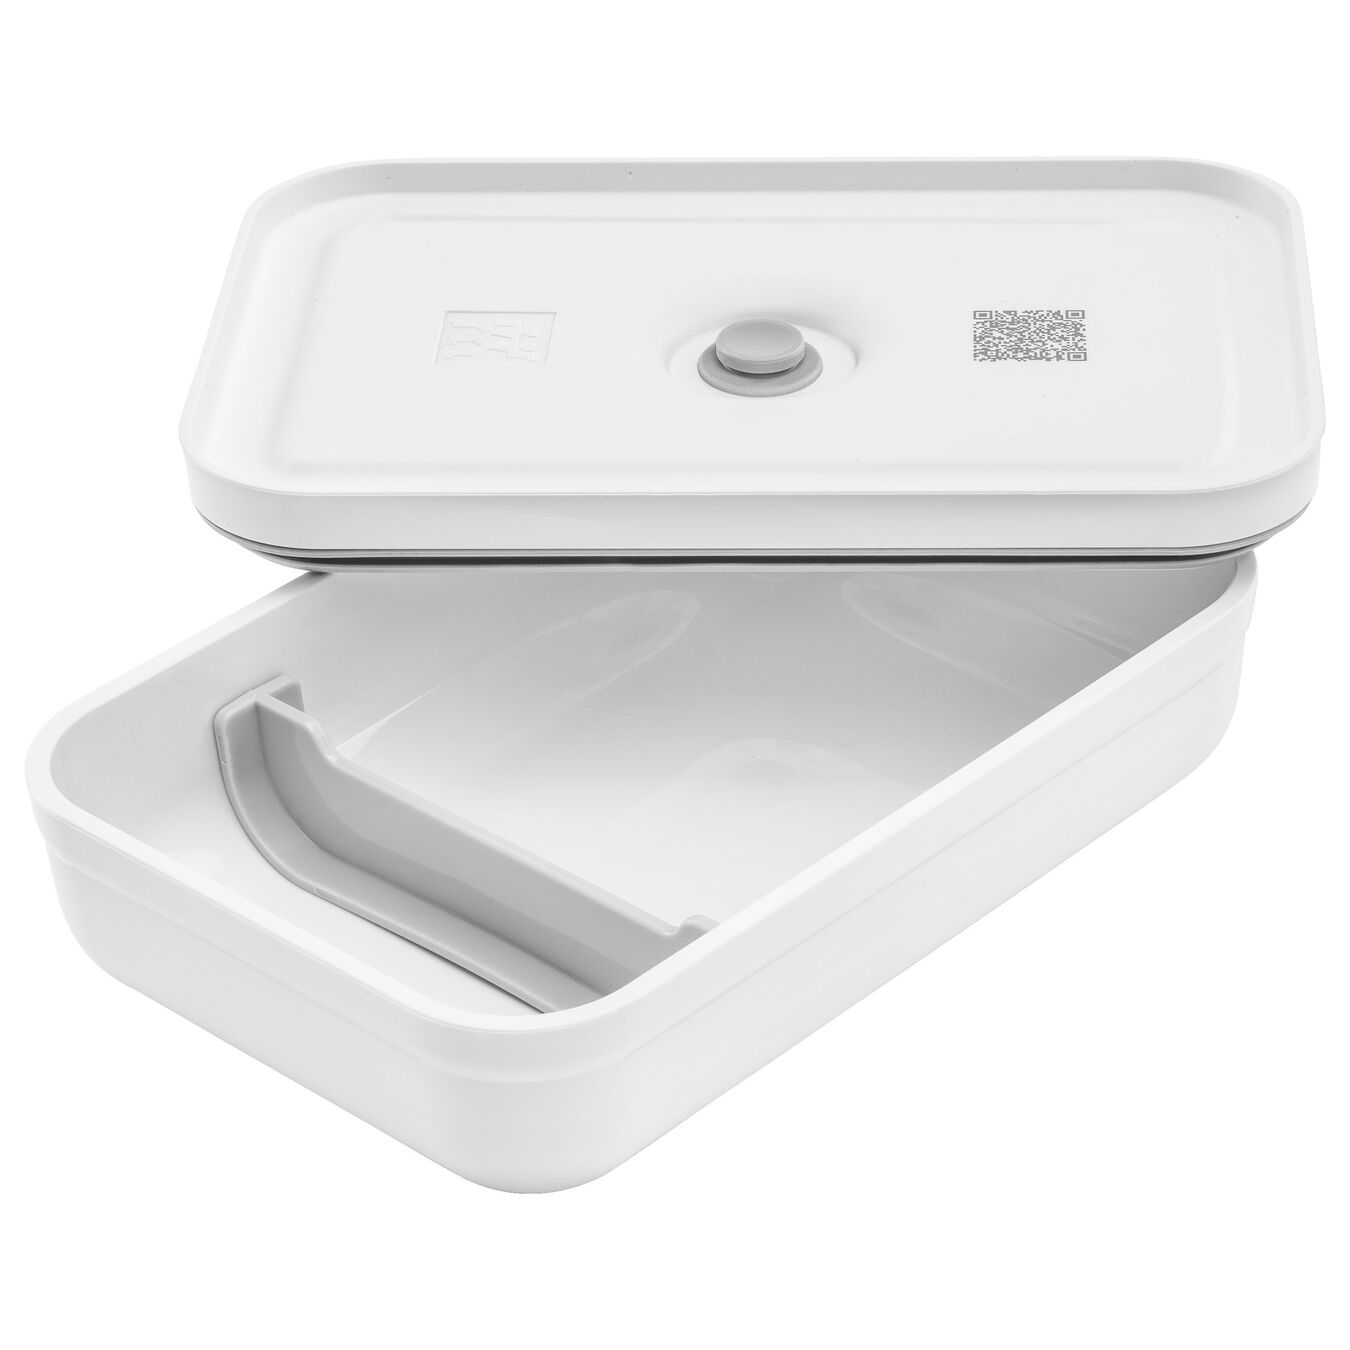 Lunch box sottovuoto L piatto, plastica, bianco-grigio,,large 5